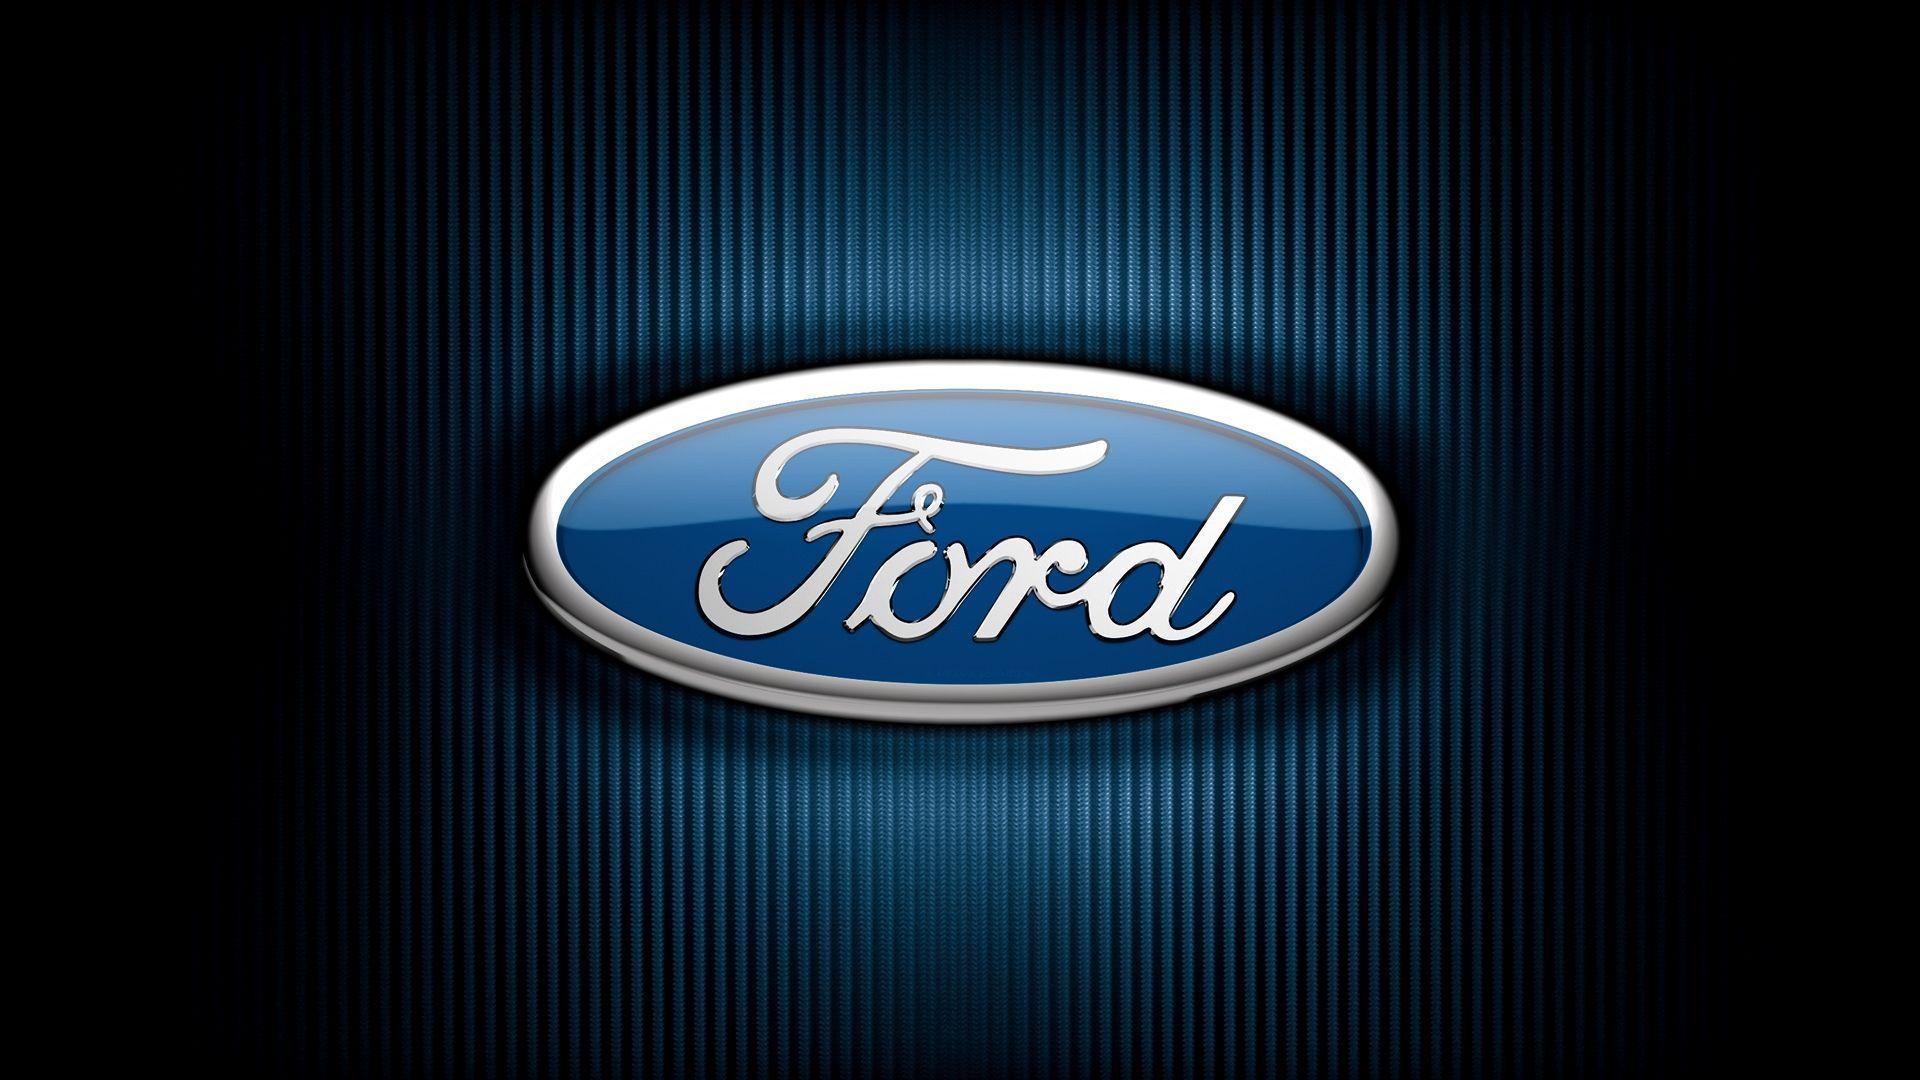 Ford Car Logos HD Wallpaper. Widescreen Wallpaper. High